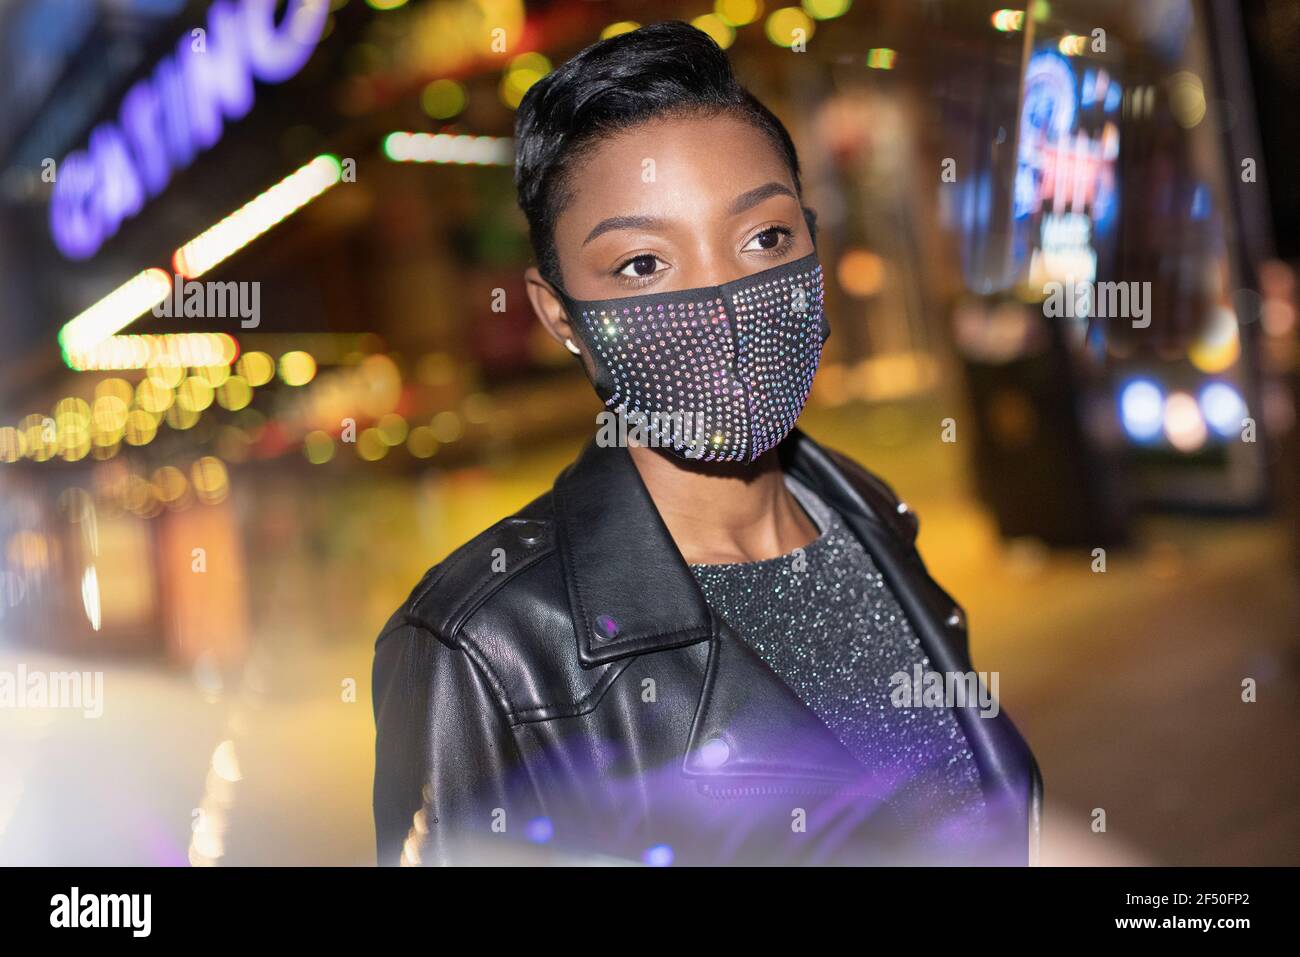 Giovane donna in maschera scintillante in città con luci a. notte Foto Stock